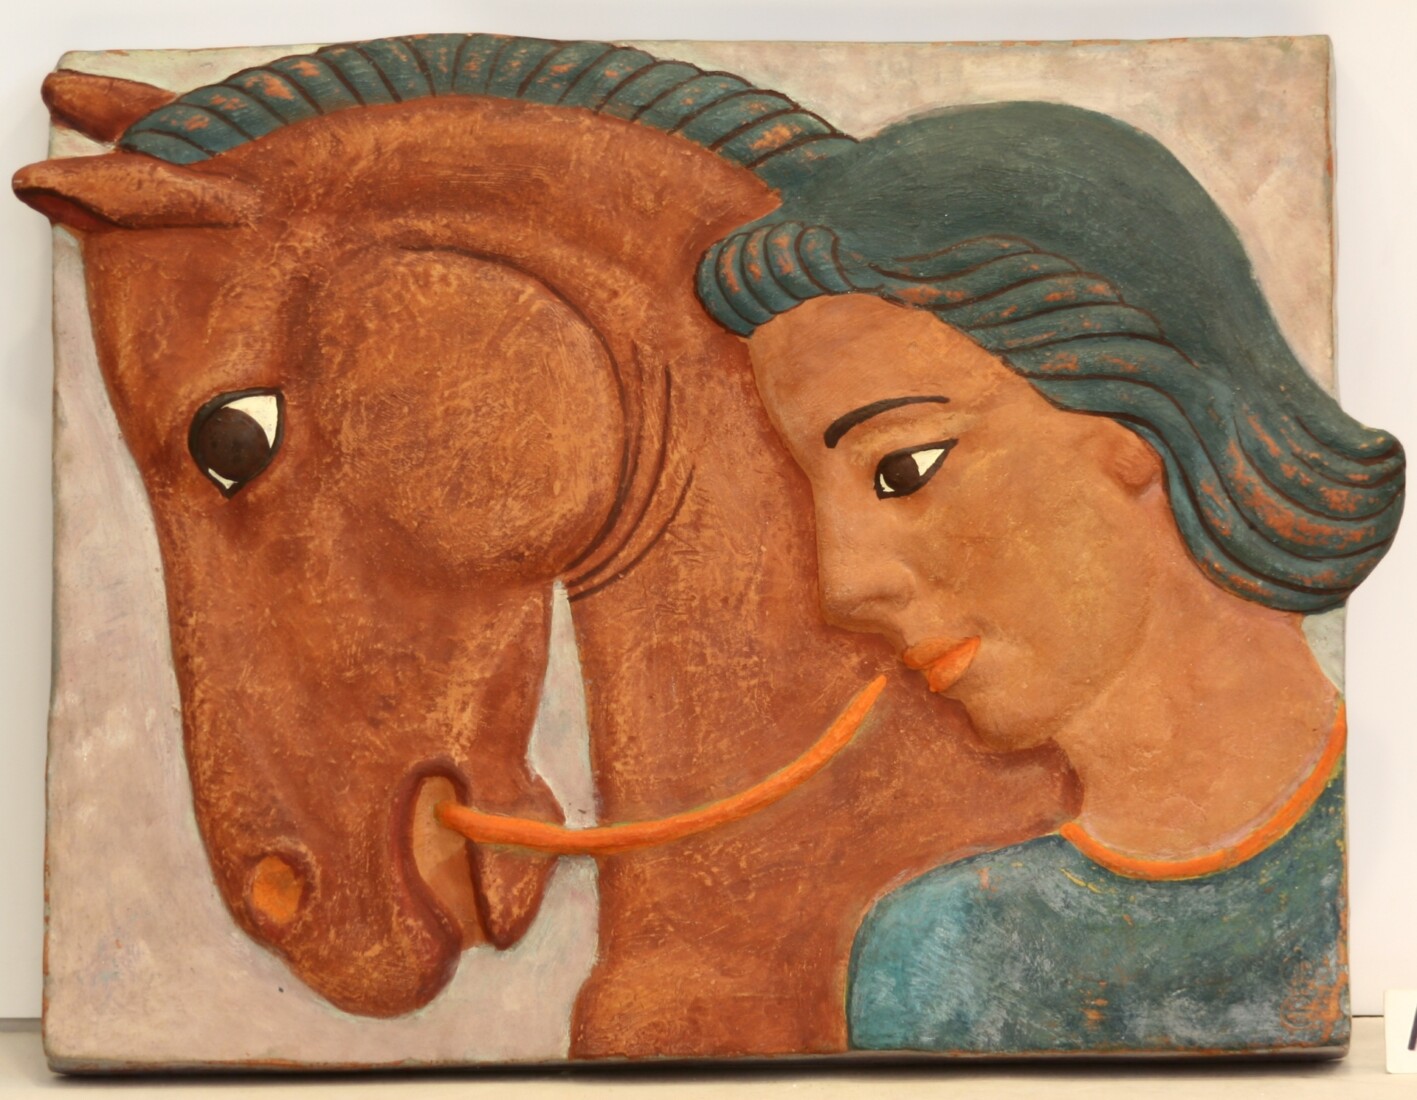 Hand-coloured ceramic relief